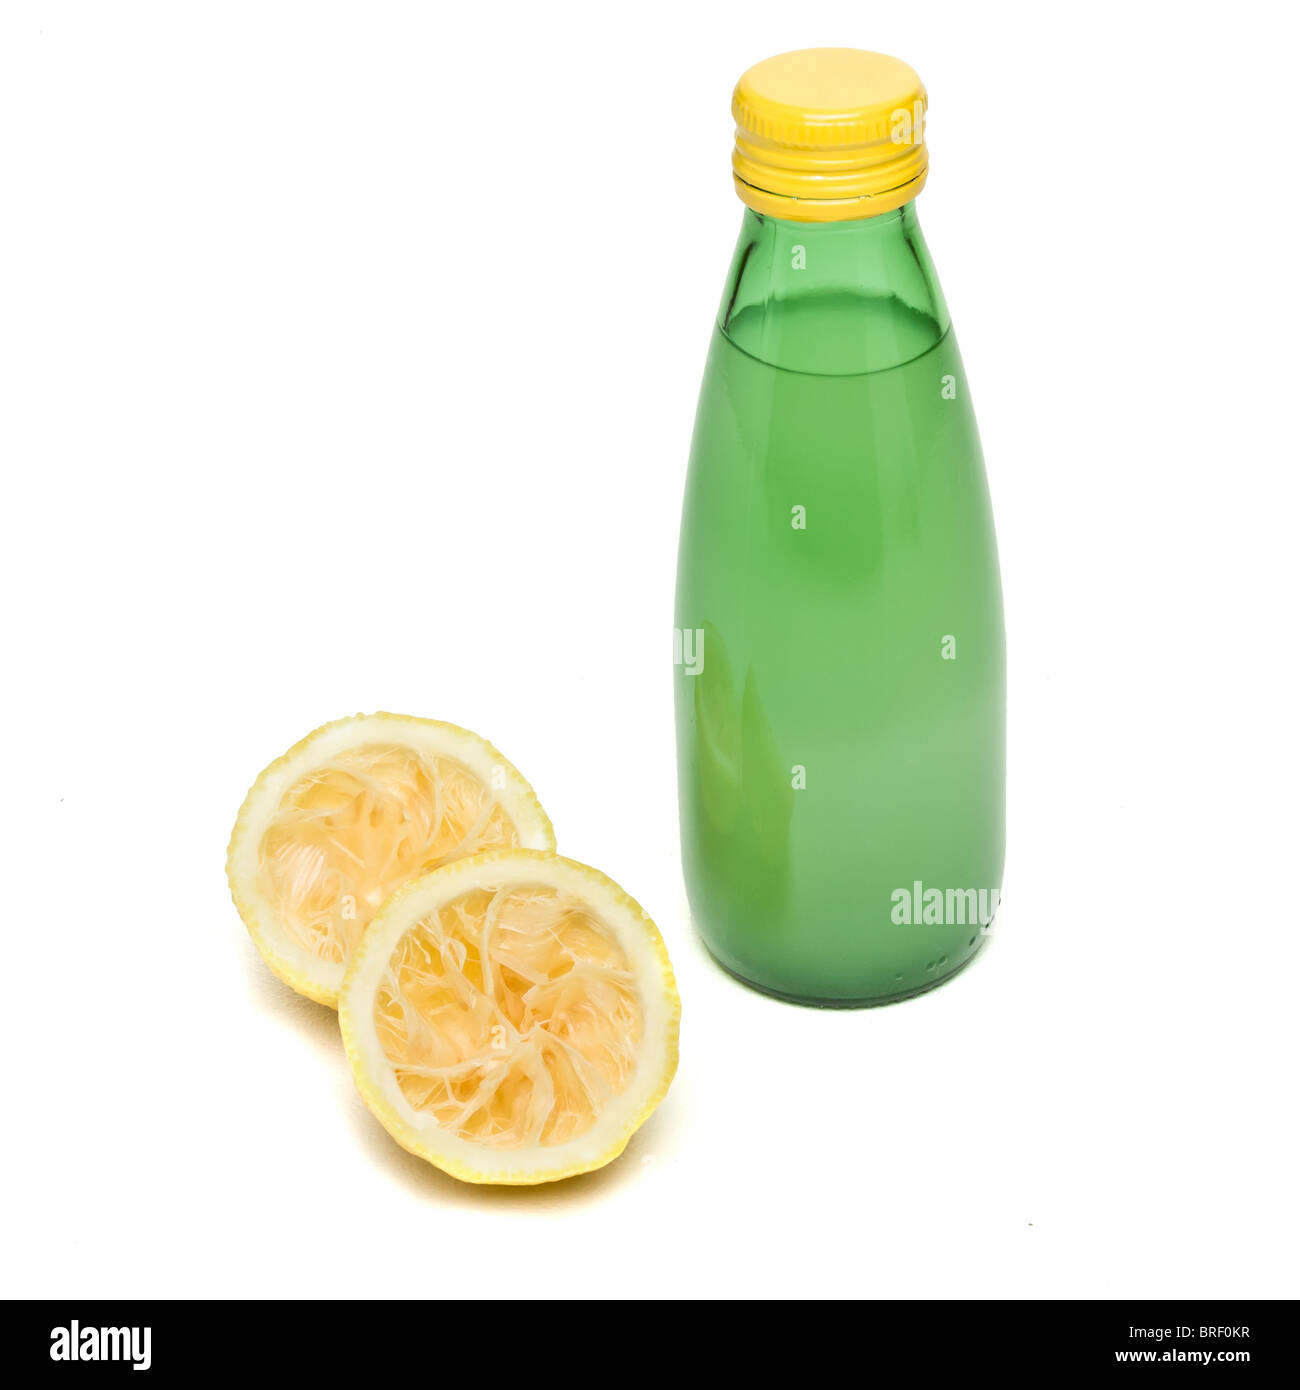 freshly squeezed and bottled lemon juice concept isolated on white. Stock Photo